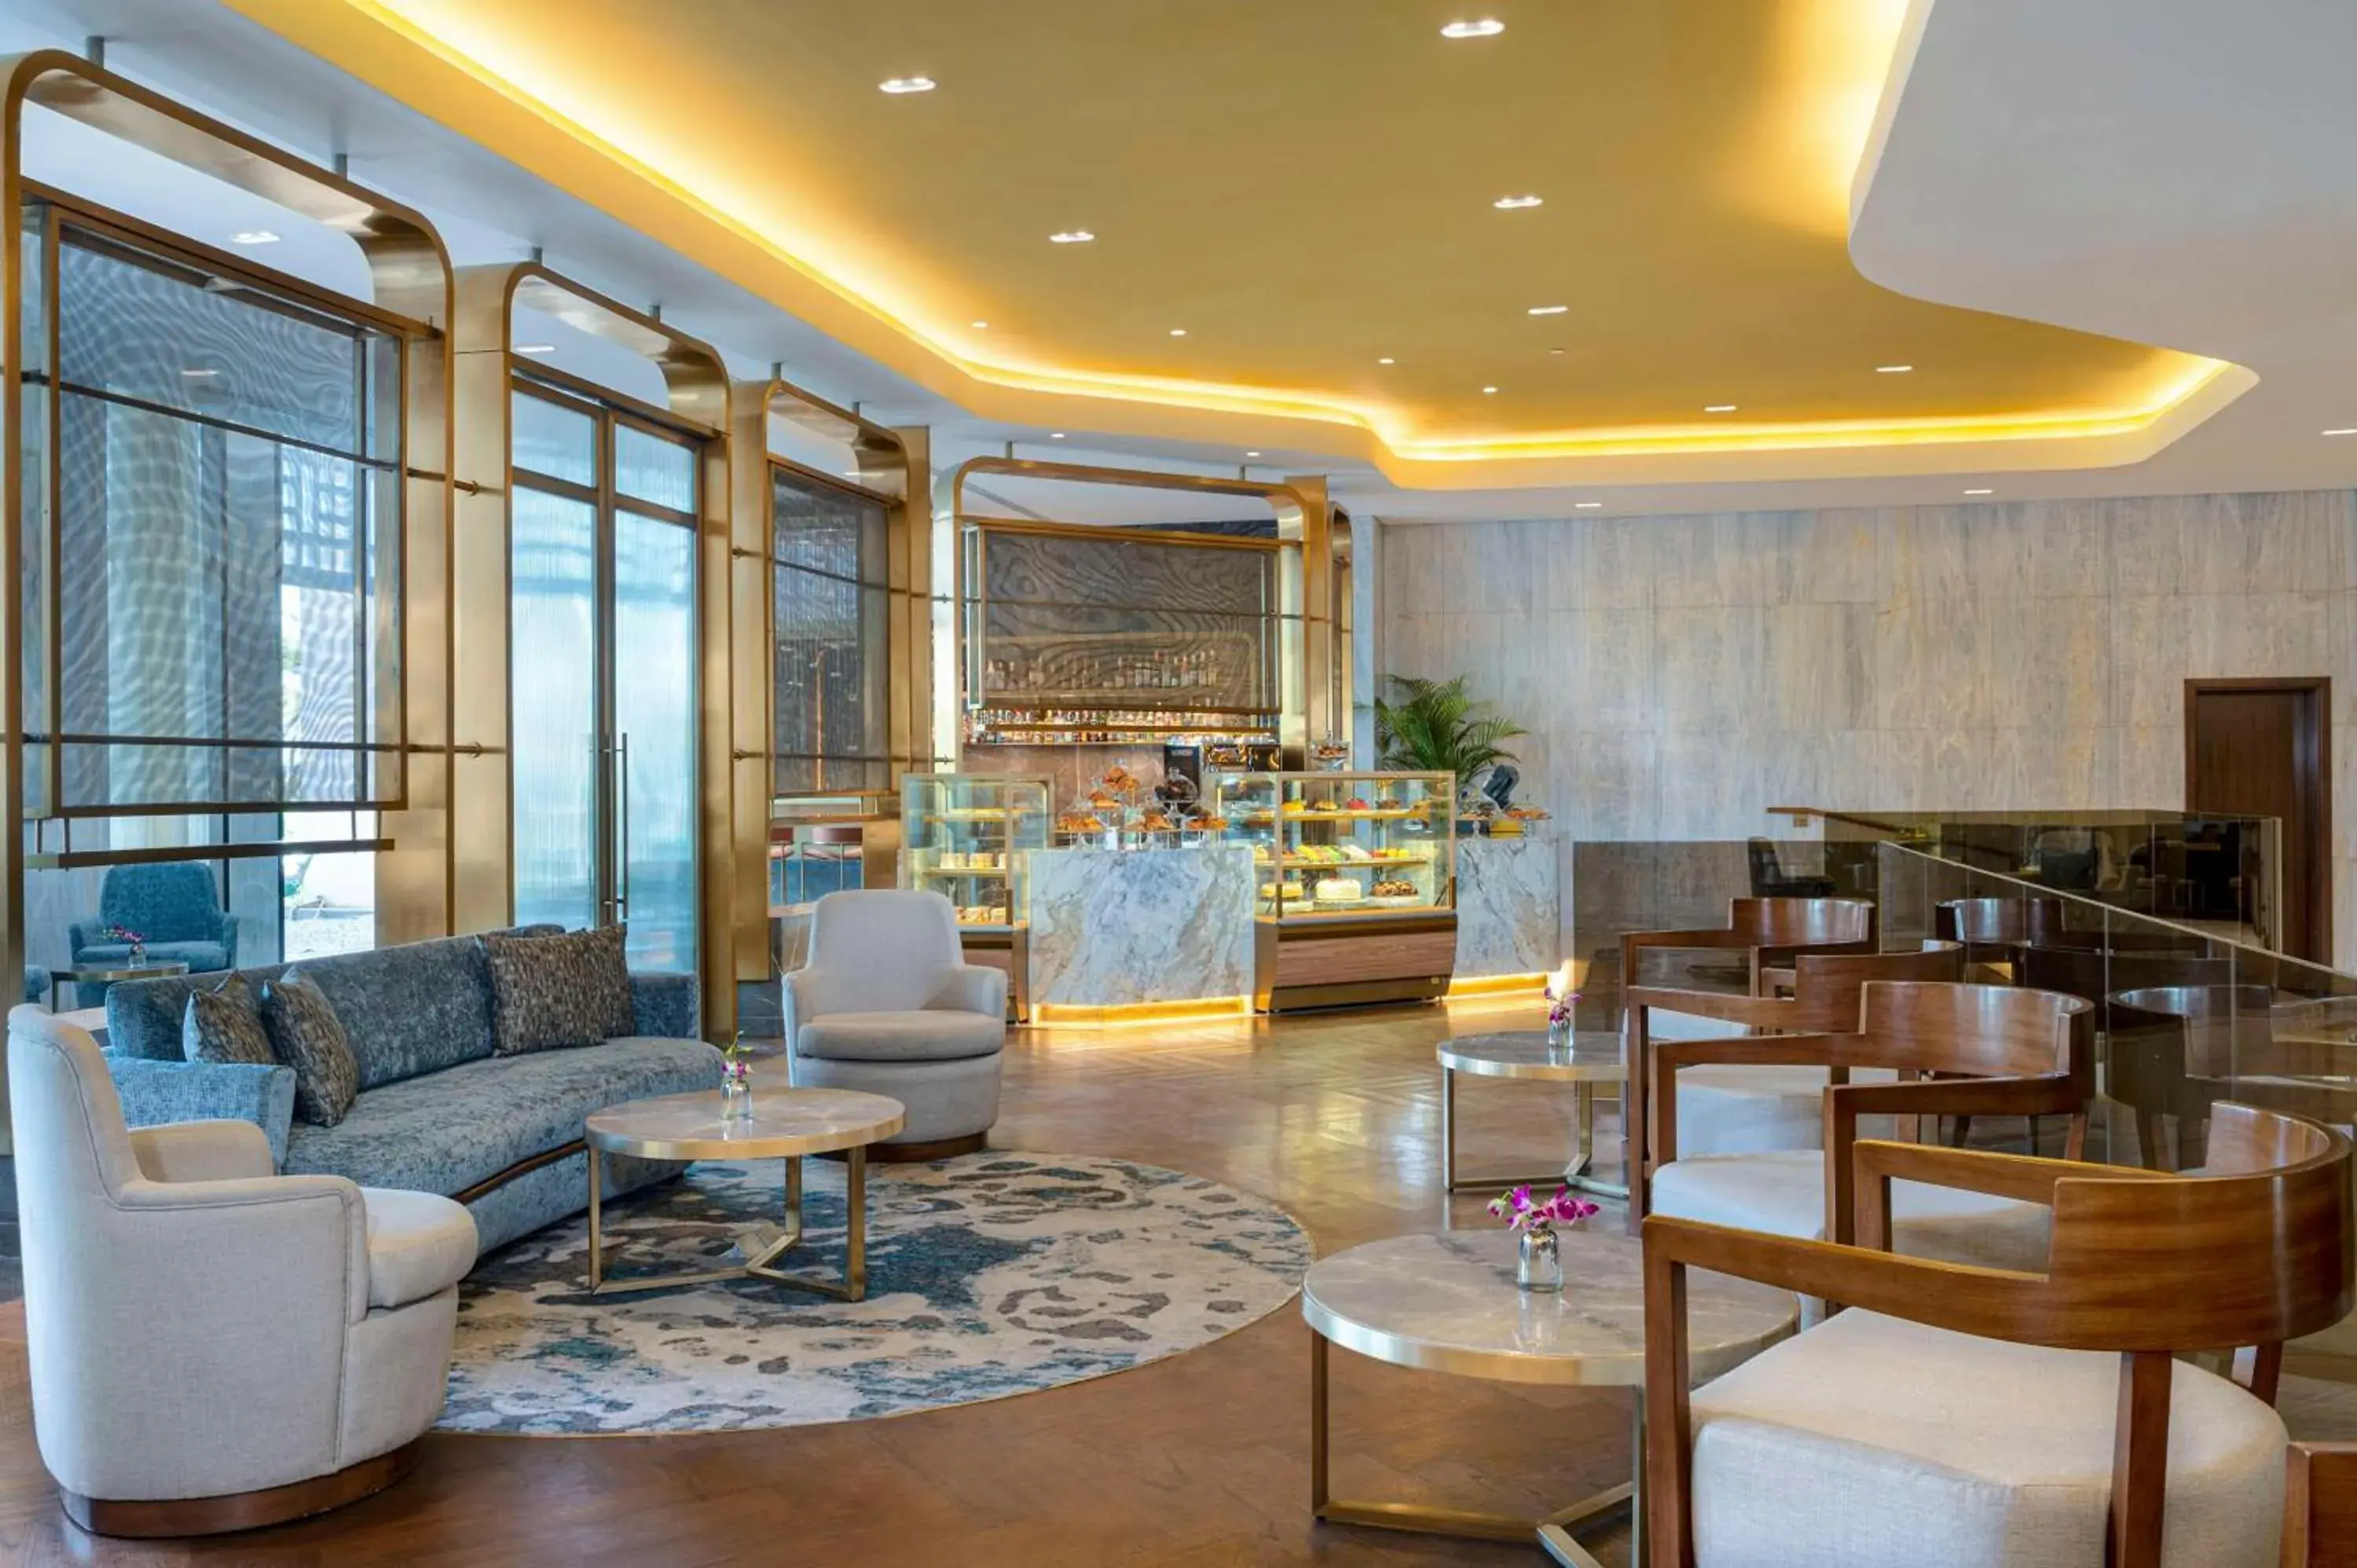 Lobby or reception in Conrad Cairo Hotel & Casino